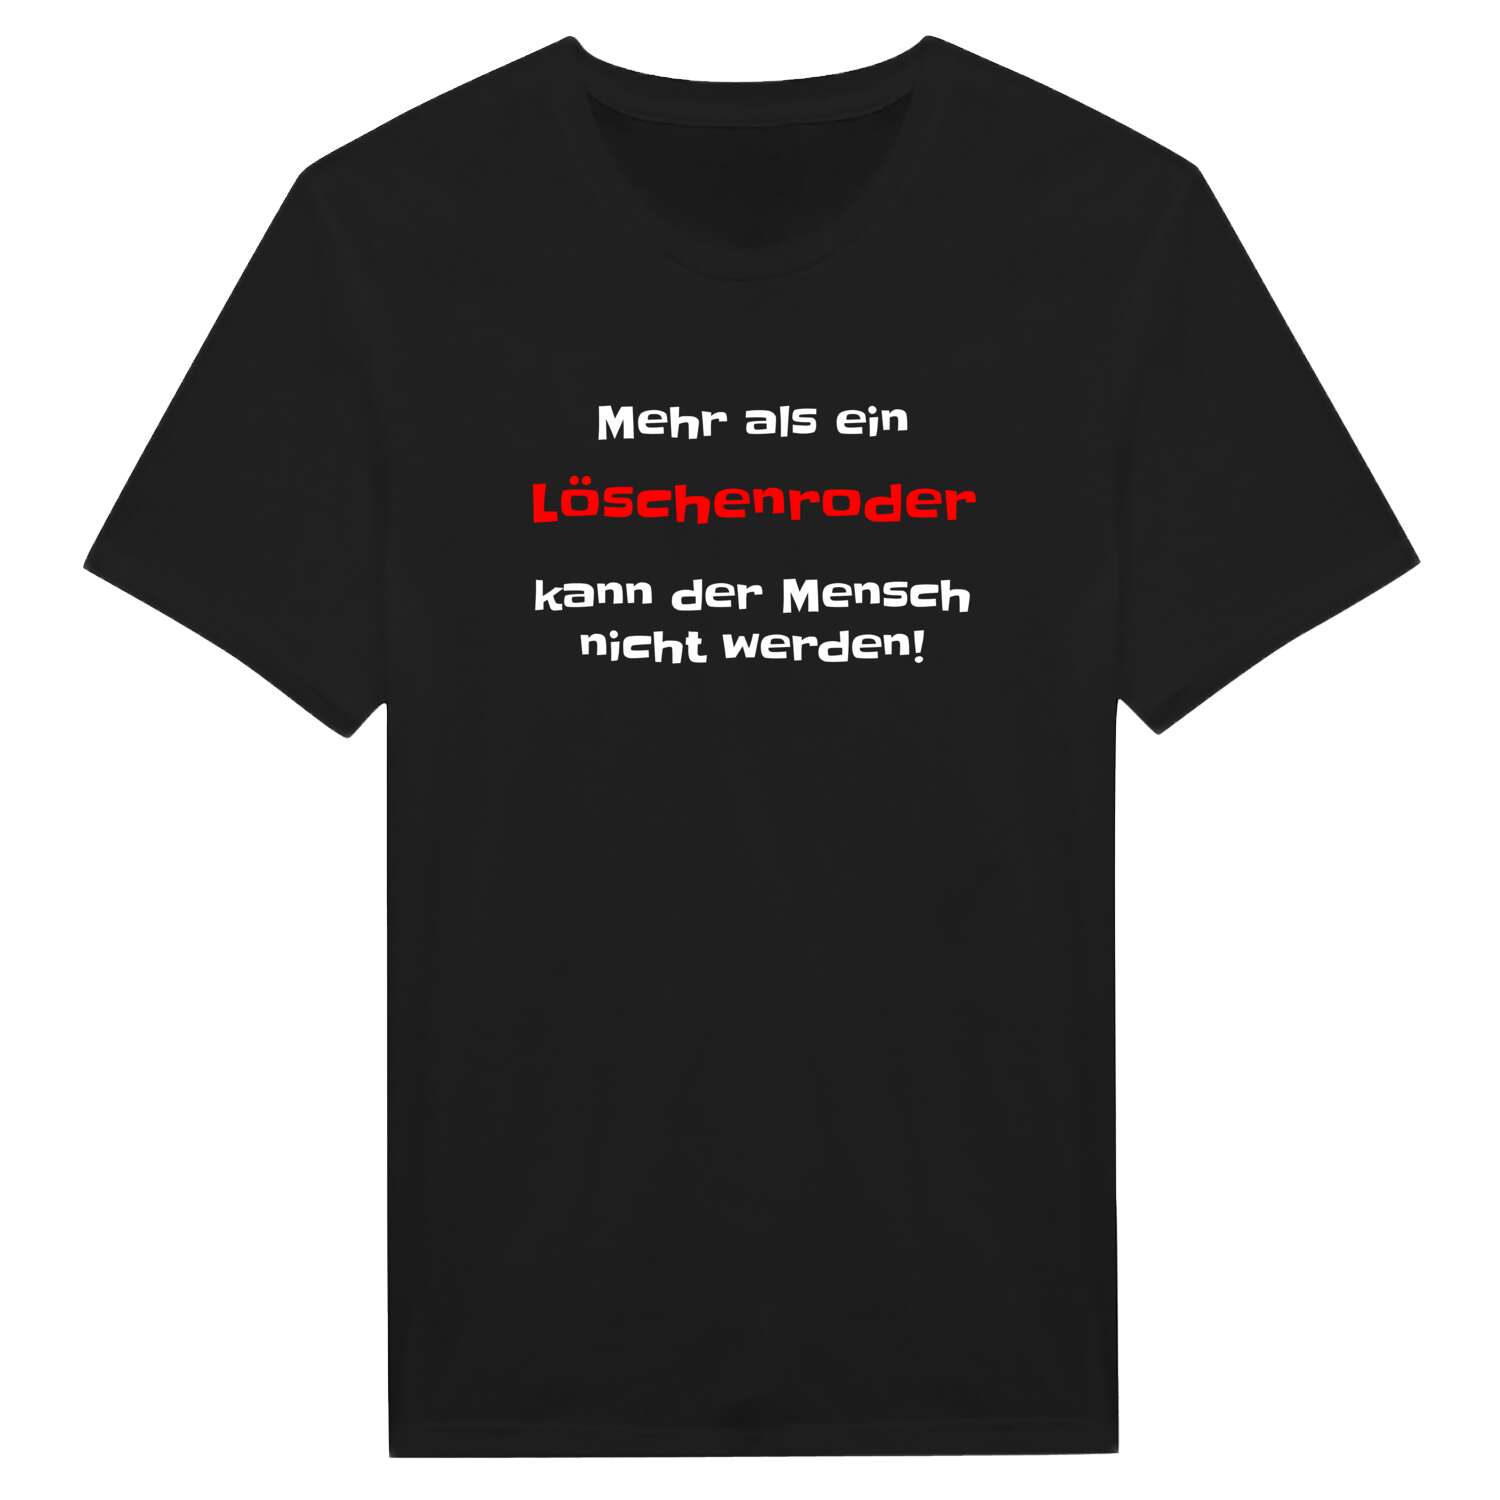 Löschenrod T-Shirt »Mehr als ein«